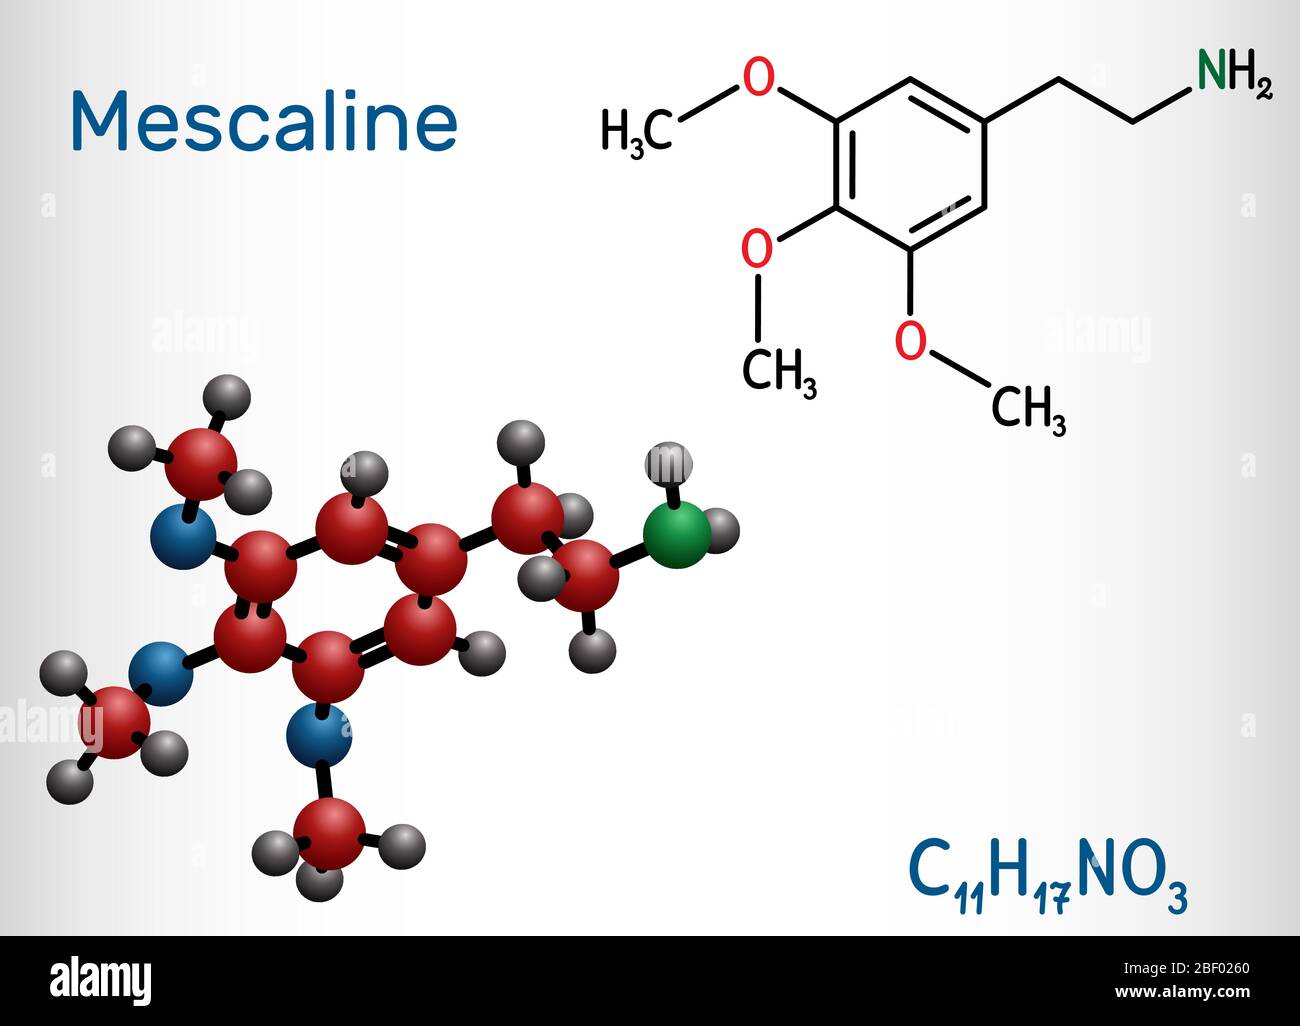 Meskalin-Molekül. Es ist halluzinogen, psychedelisch, Phenethylamin Alkaloid. Strukturelle chemische Formel und Molekülmodell. Vektorgrafik Stock Vektor